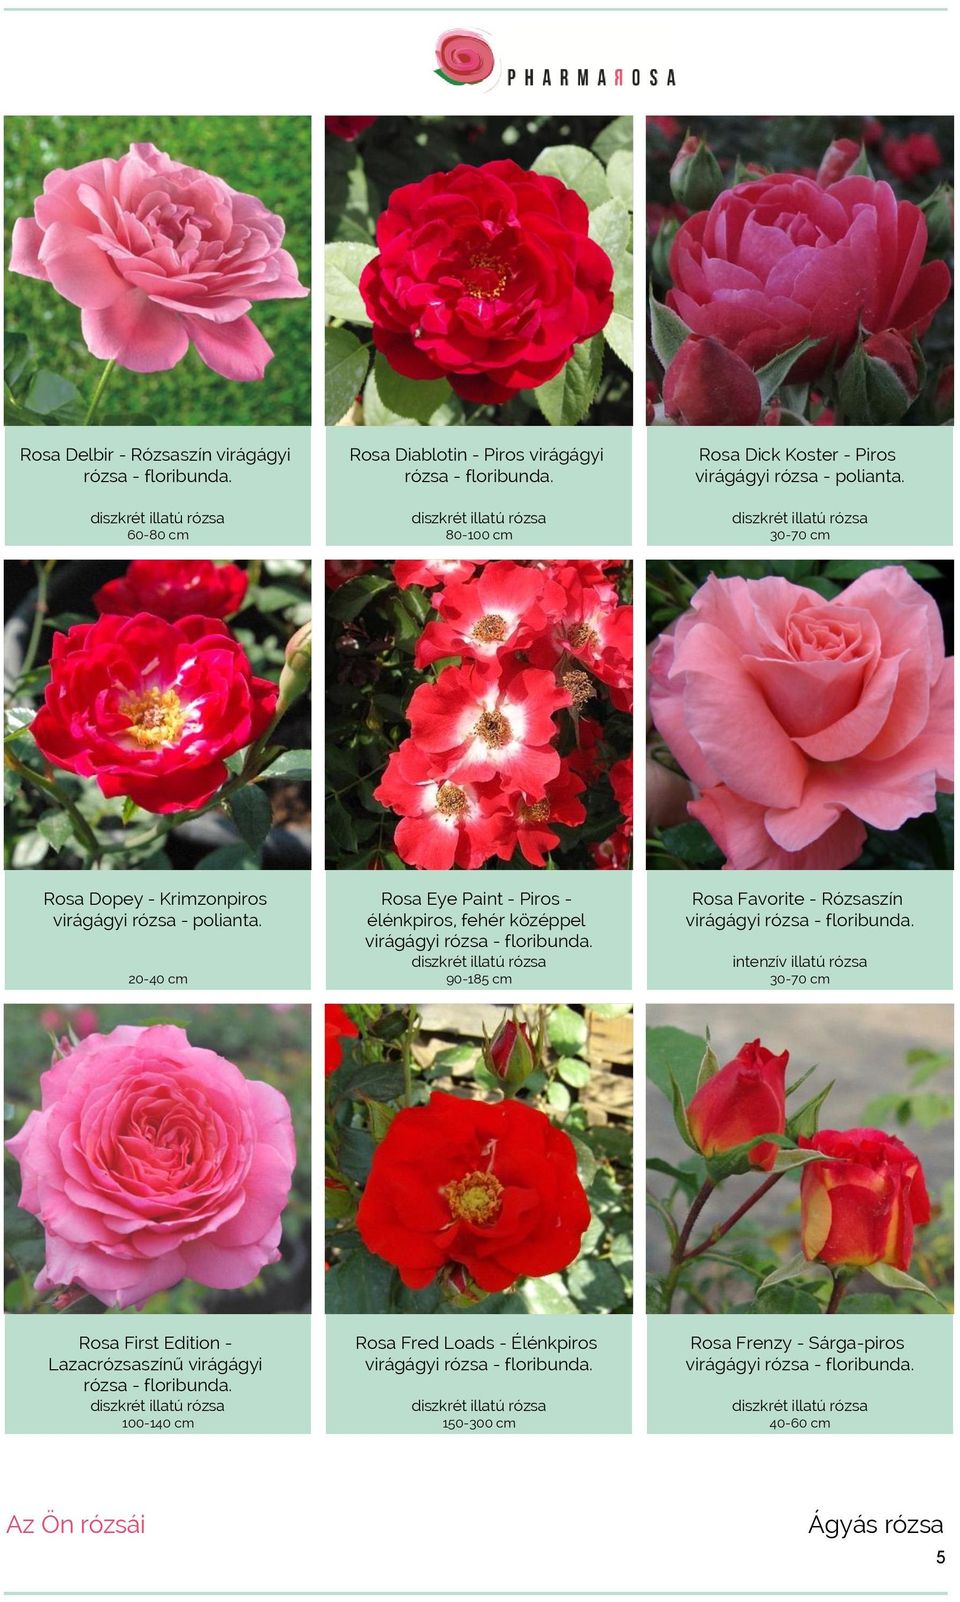 20-40 cm Rosa Eye Paint - Piros - élénkpiros, fehér középpel virágágyi rózsa - floribunda. 90-185 cm Rosa Favorite - Rózsaszín virágágyi rózsa - floribunda.